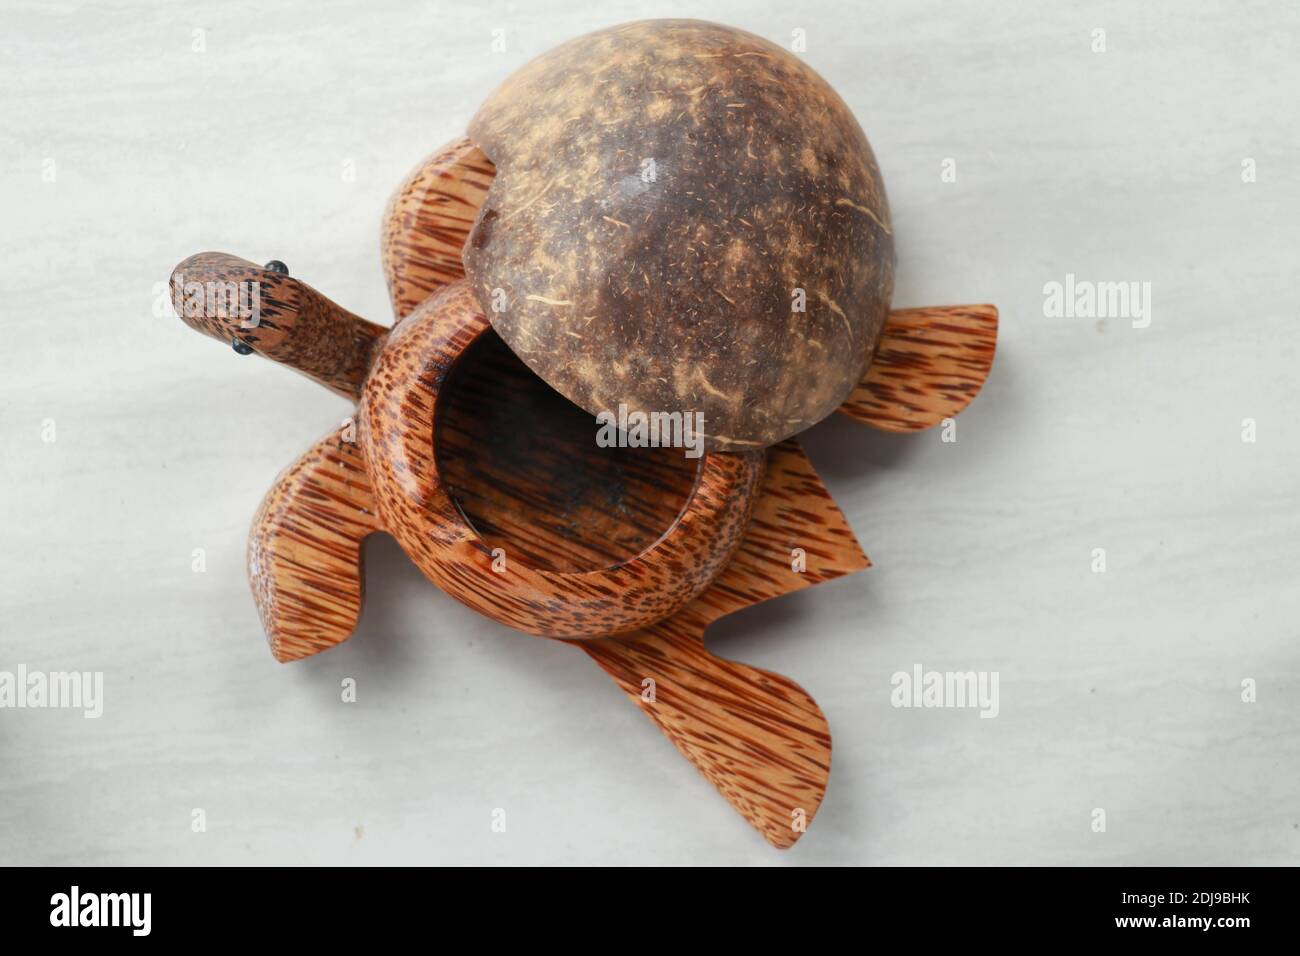 Schildkröte geformter Aschenbecher aus Ton - isoliert auf Weiß. Aschenbecher  Schildkröte aus Kokosnuss Palmholz Stockfotografie - Alamy